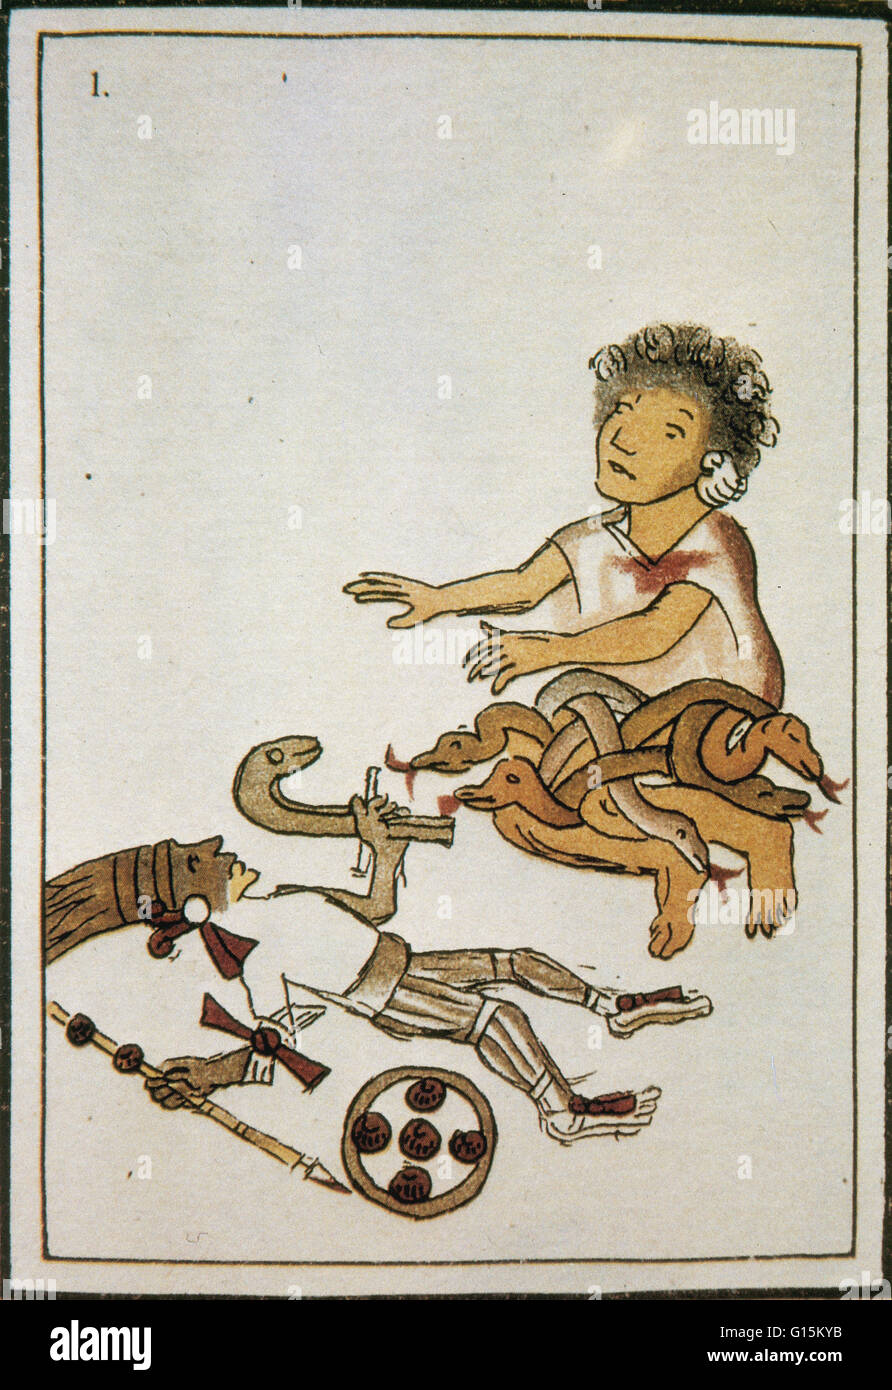 Coatlicue da nacimiento a Huitzilopochtli, en el Códice Florentino. En la religión azteca, Huitzilopochtli era el dios de la guerra, el sol, el sacrificio humano y la patrona de la ciudad de Tenochtitlan. Él era también el Dios nacional de los mexicas de Tenochtitlan. El myt Foto de stock